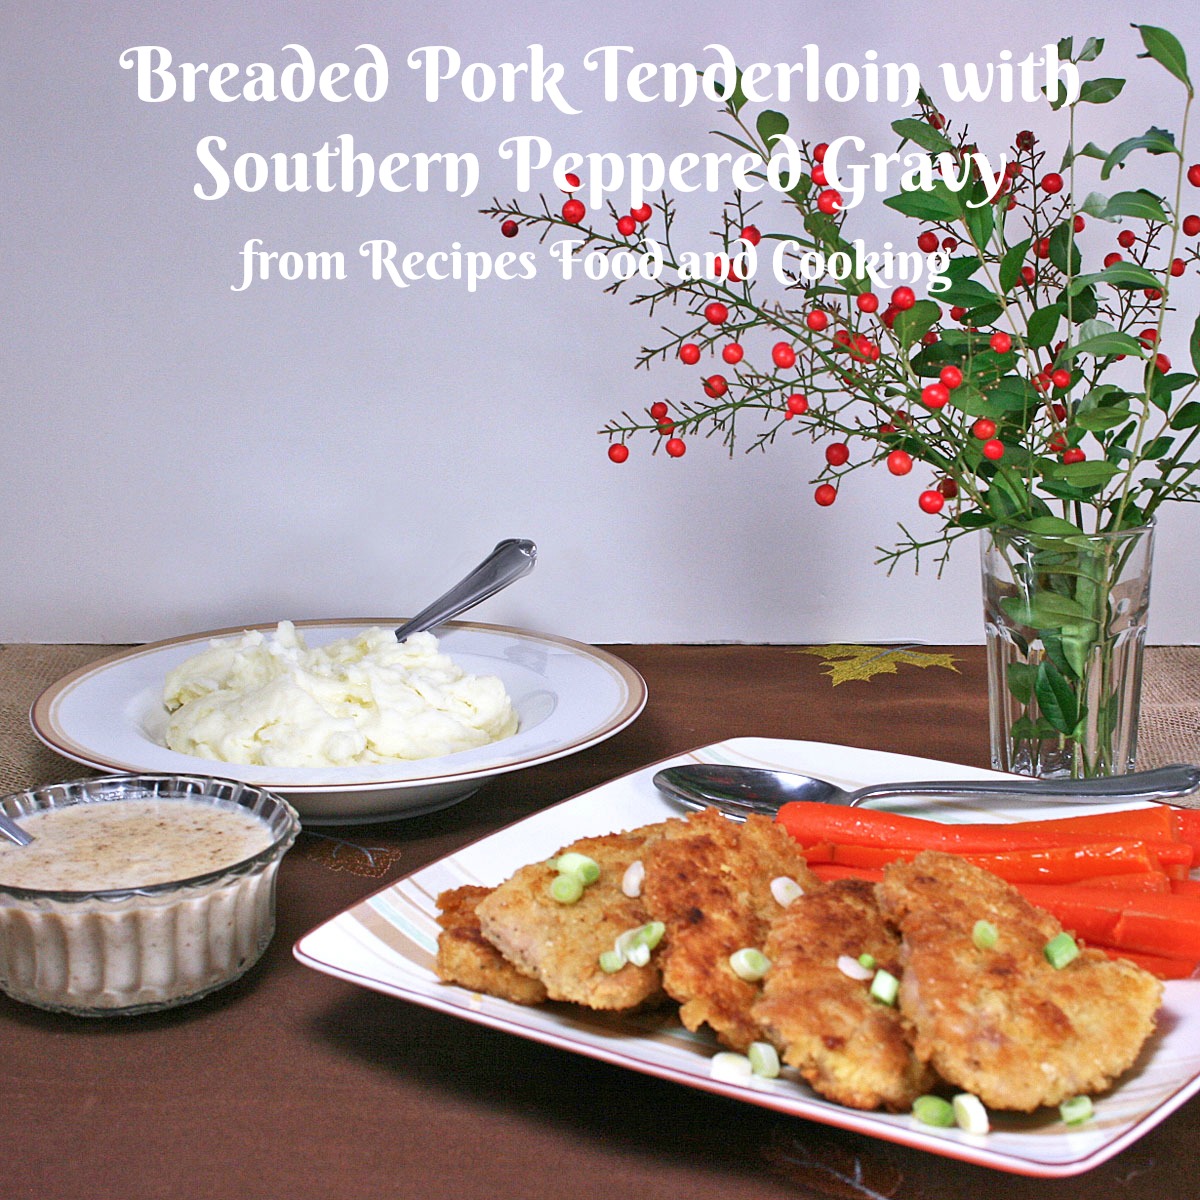 Breaded Pork Tenderloin with Peppered Southern Gravy